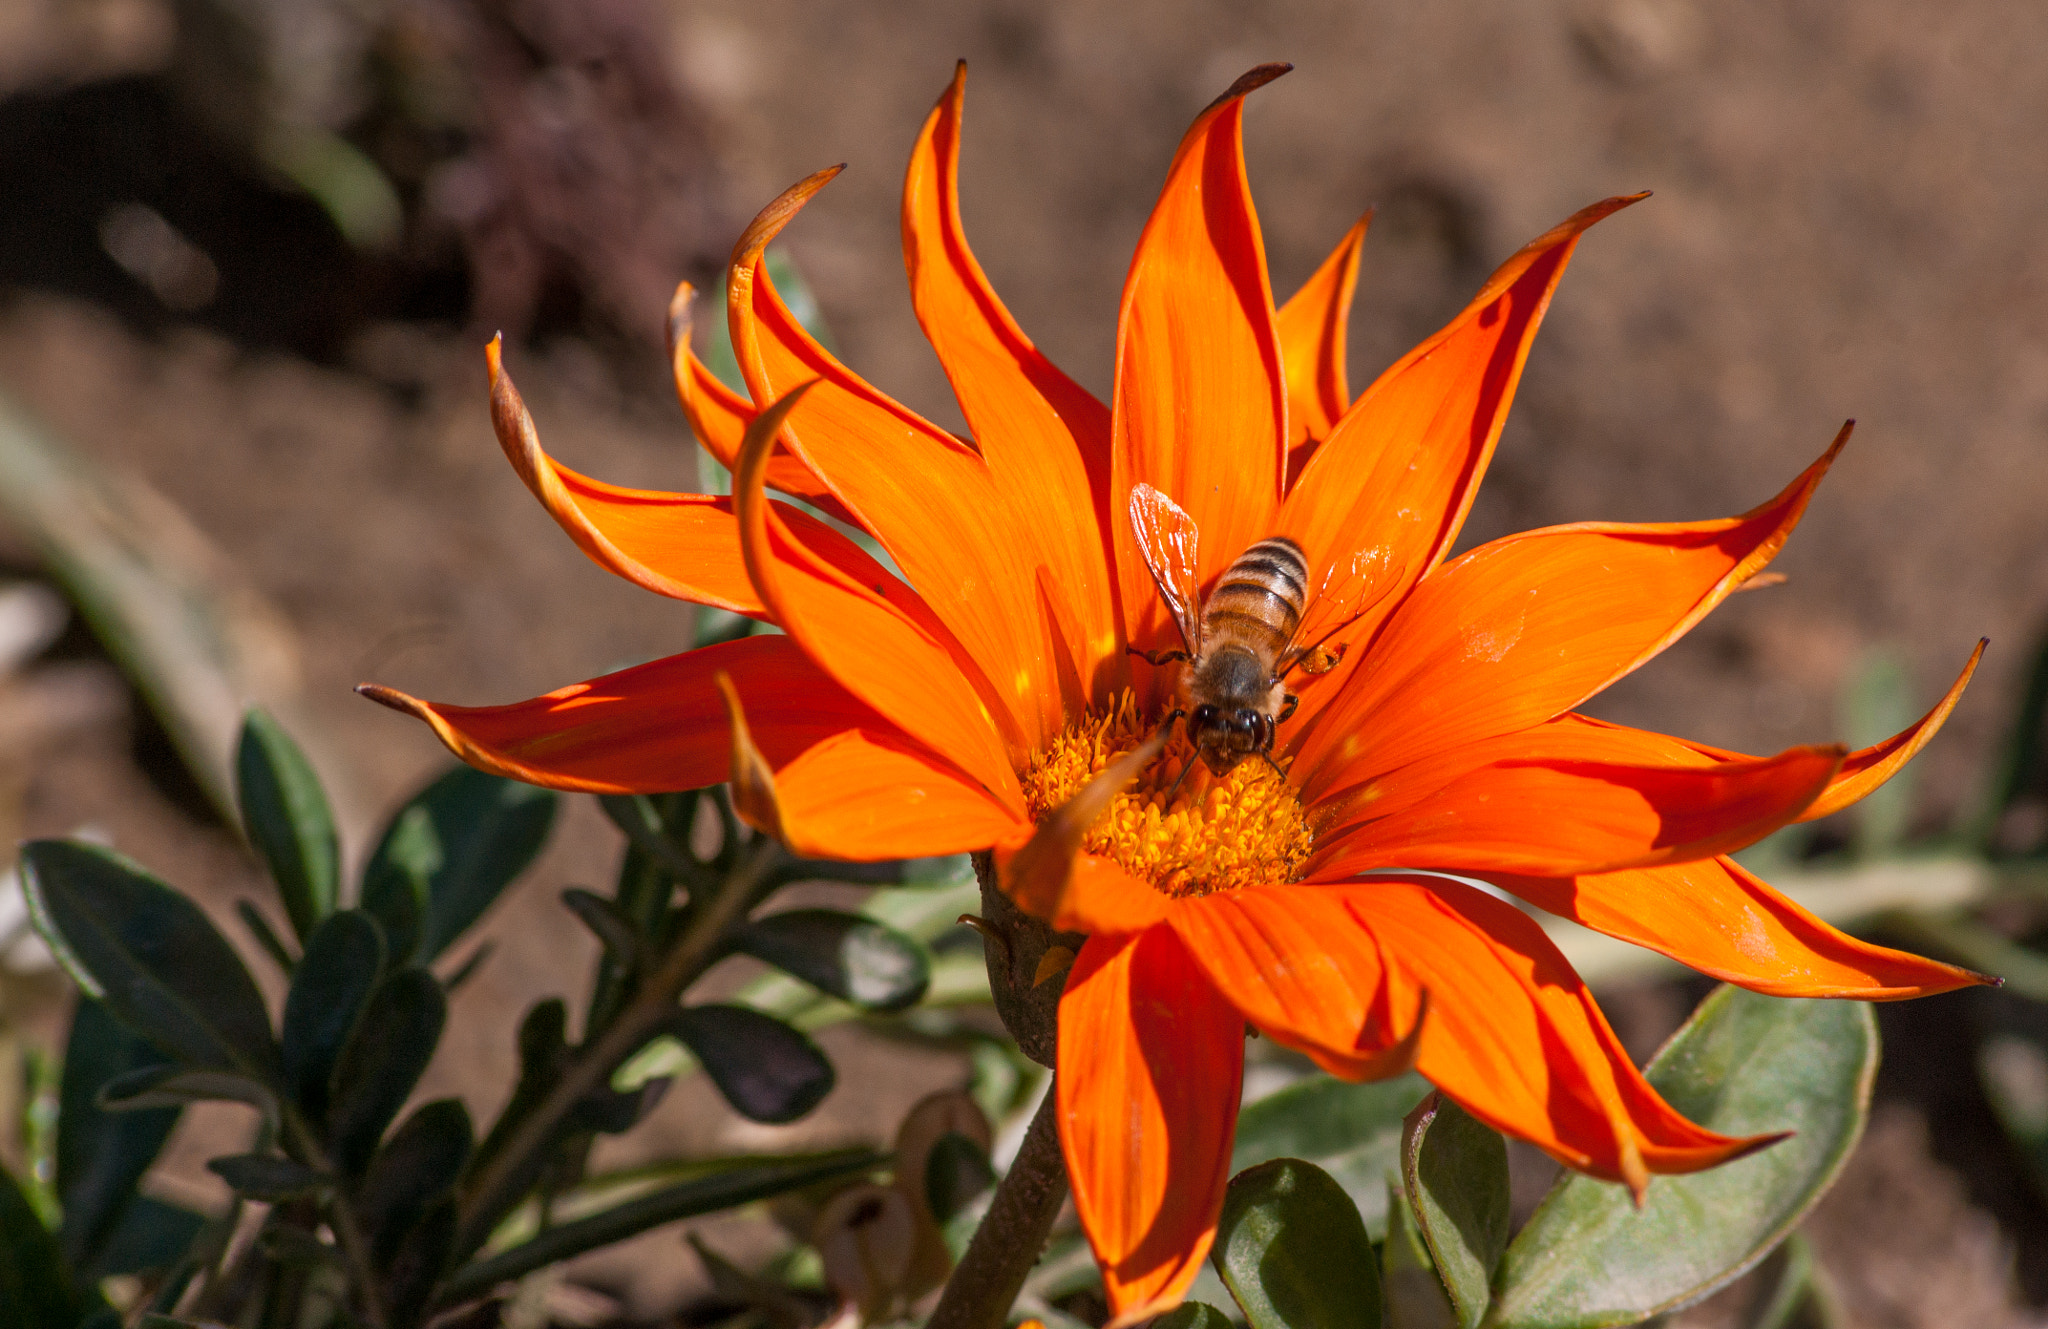 Sony Alpha DSLR-A350 sample photo. Sun, flower & a bee! photography